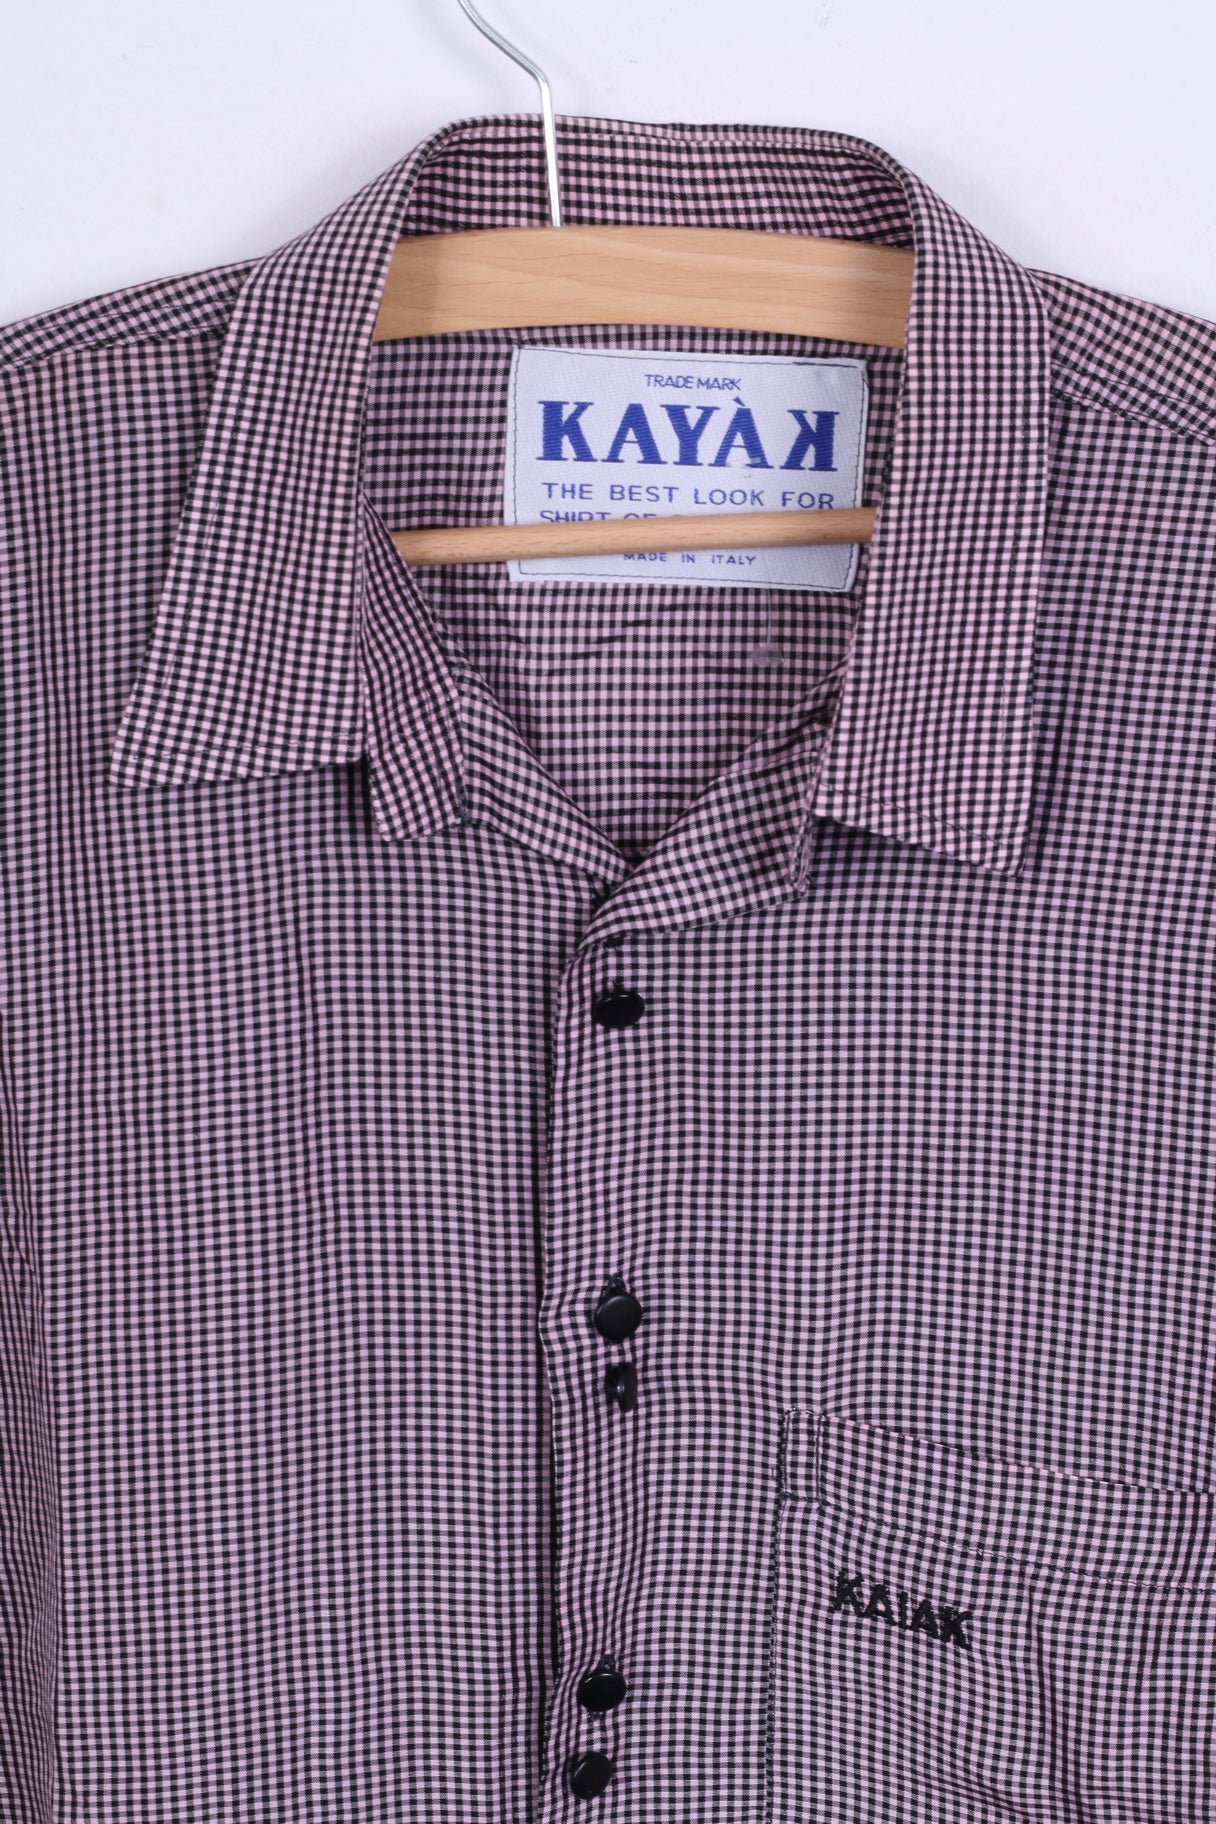 Camicia casual da uomo KAYAK M viola a quadri manica lunga moderna